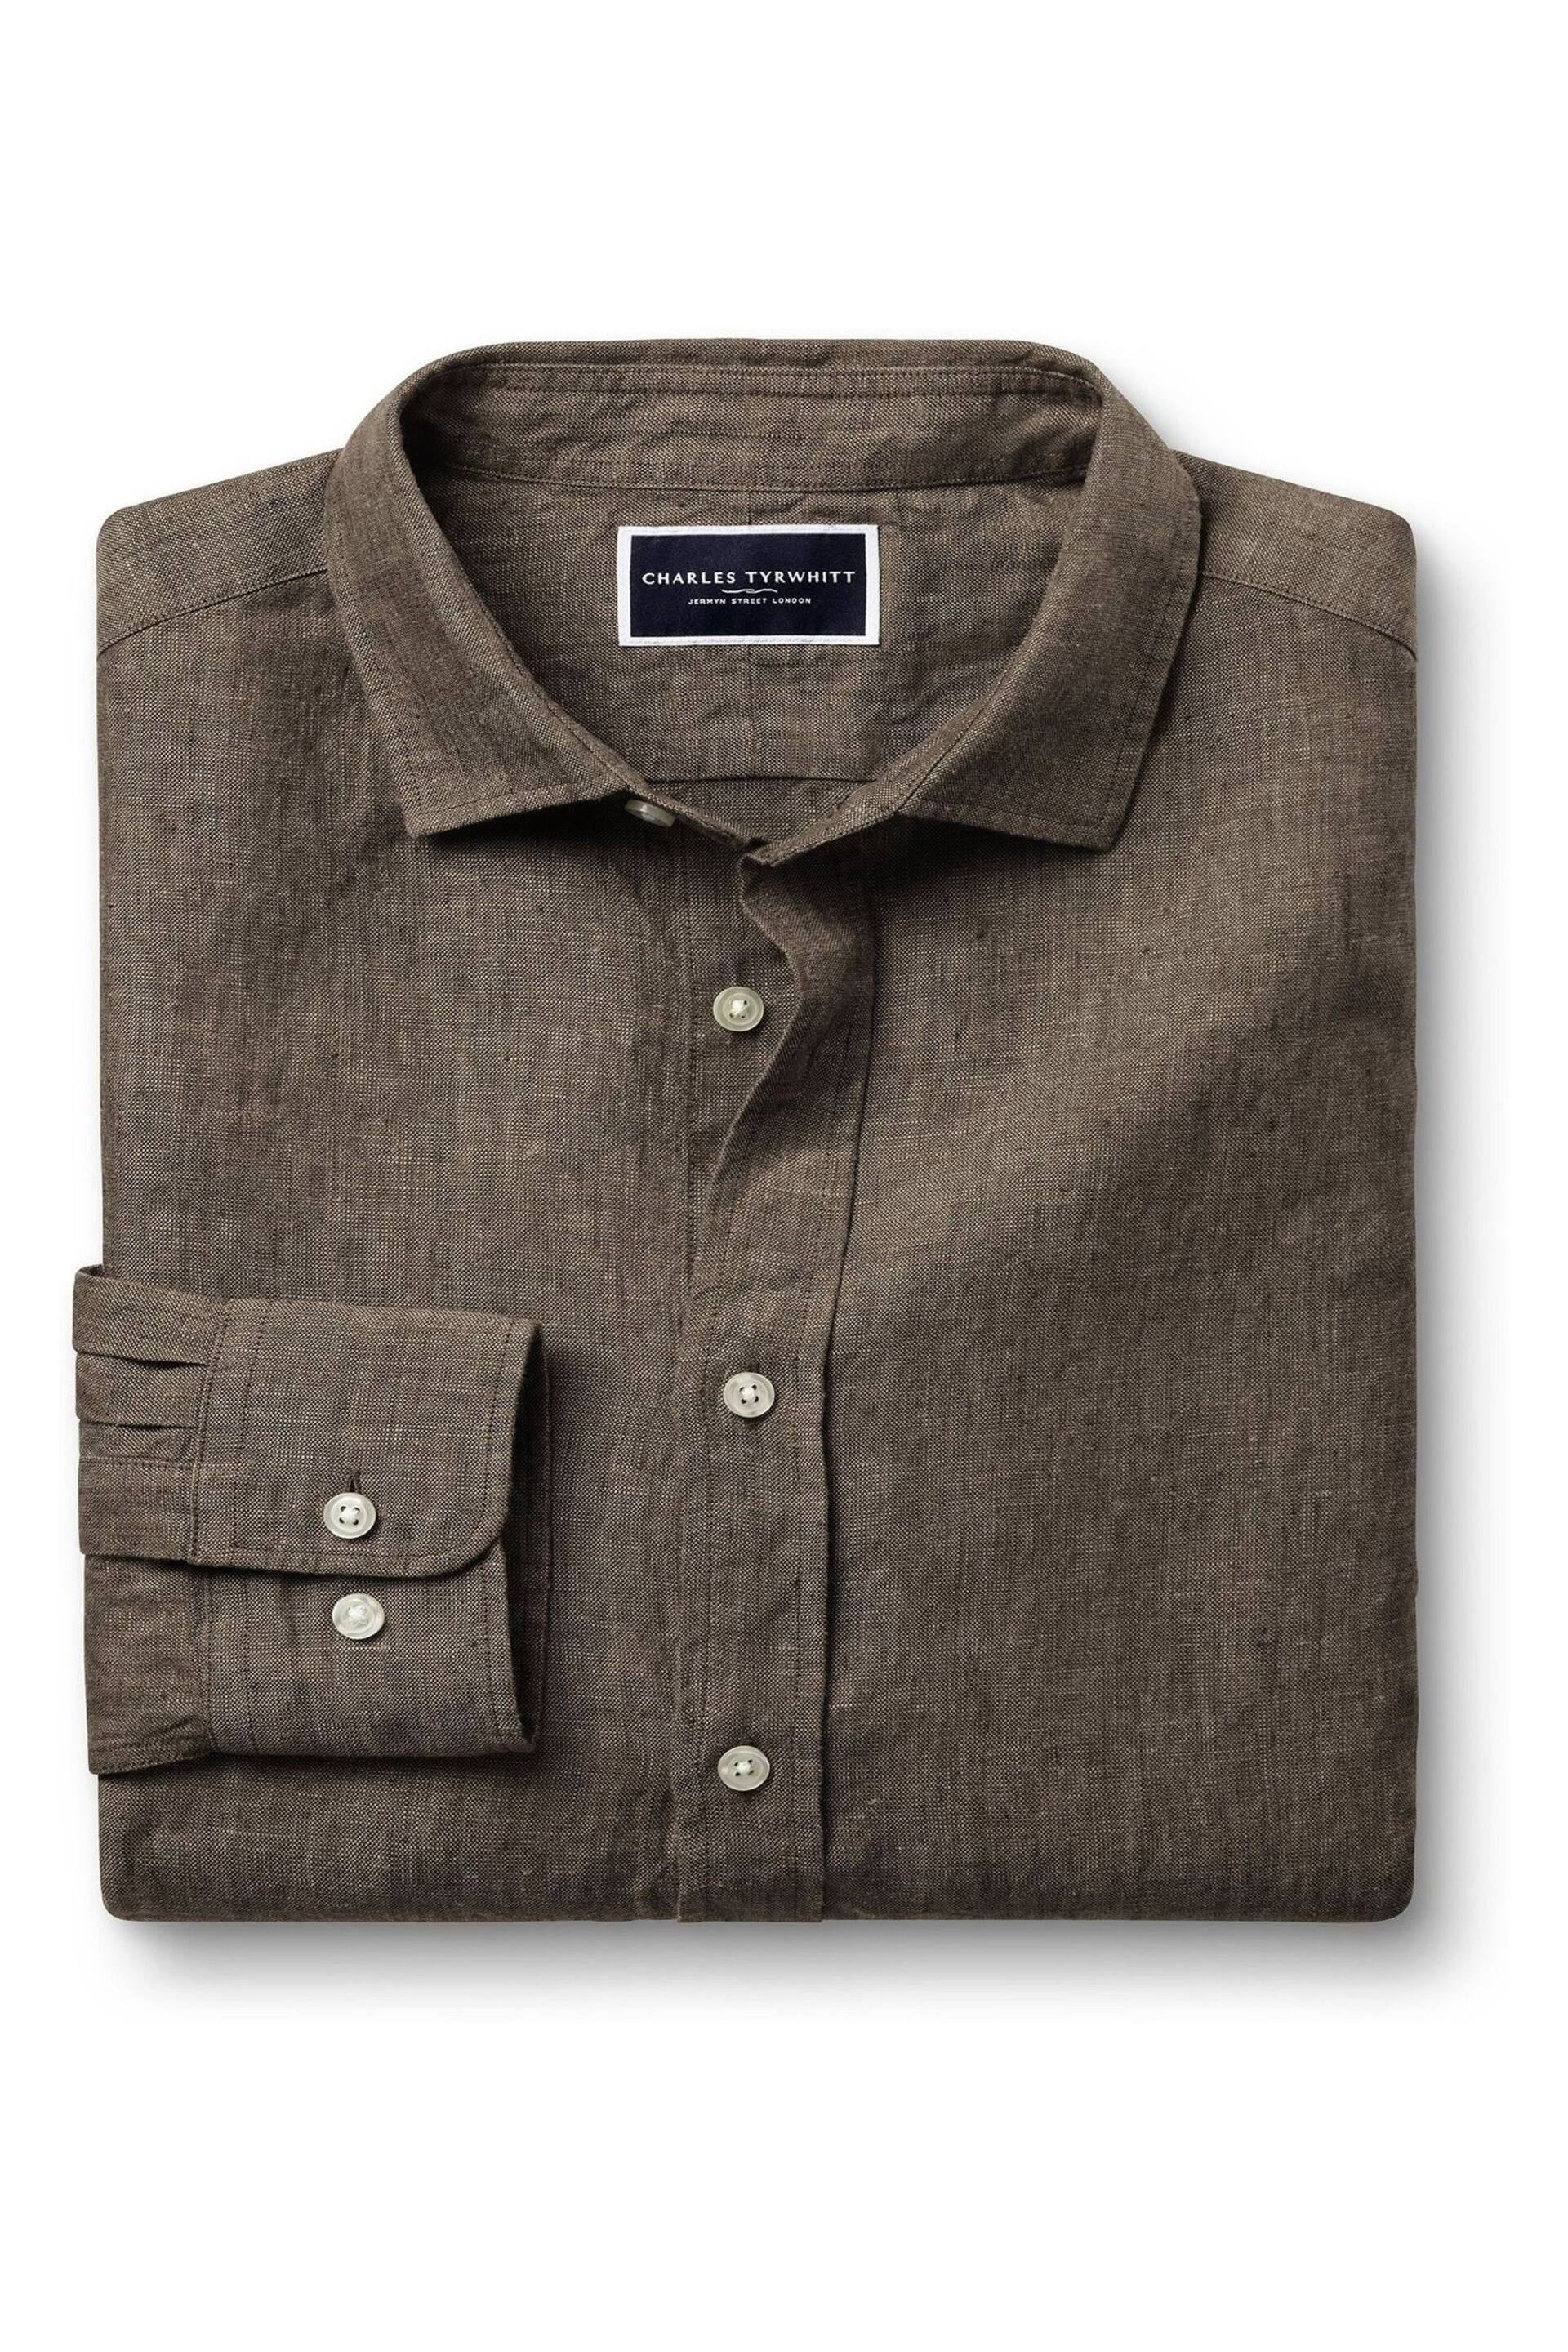 Charles Tyrwhitt Brown/Cream Slim Fit Plain Short Sleeve Pure Linen Full Sleeves Shirt - Image 4 of 6